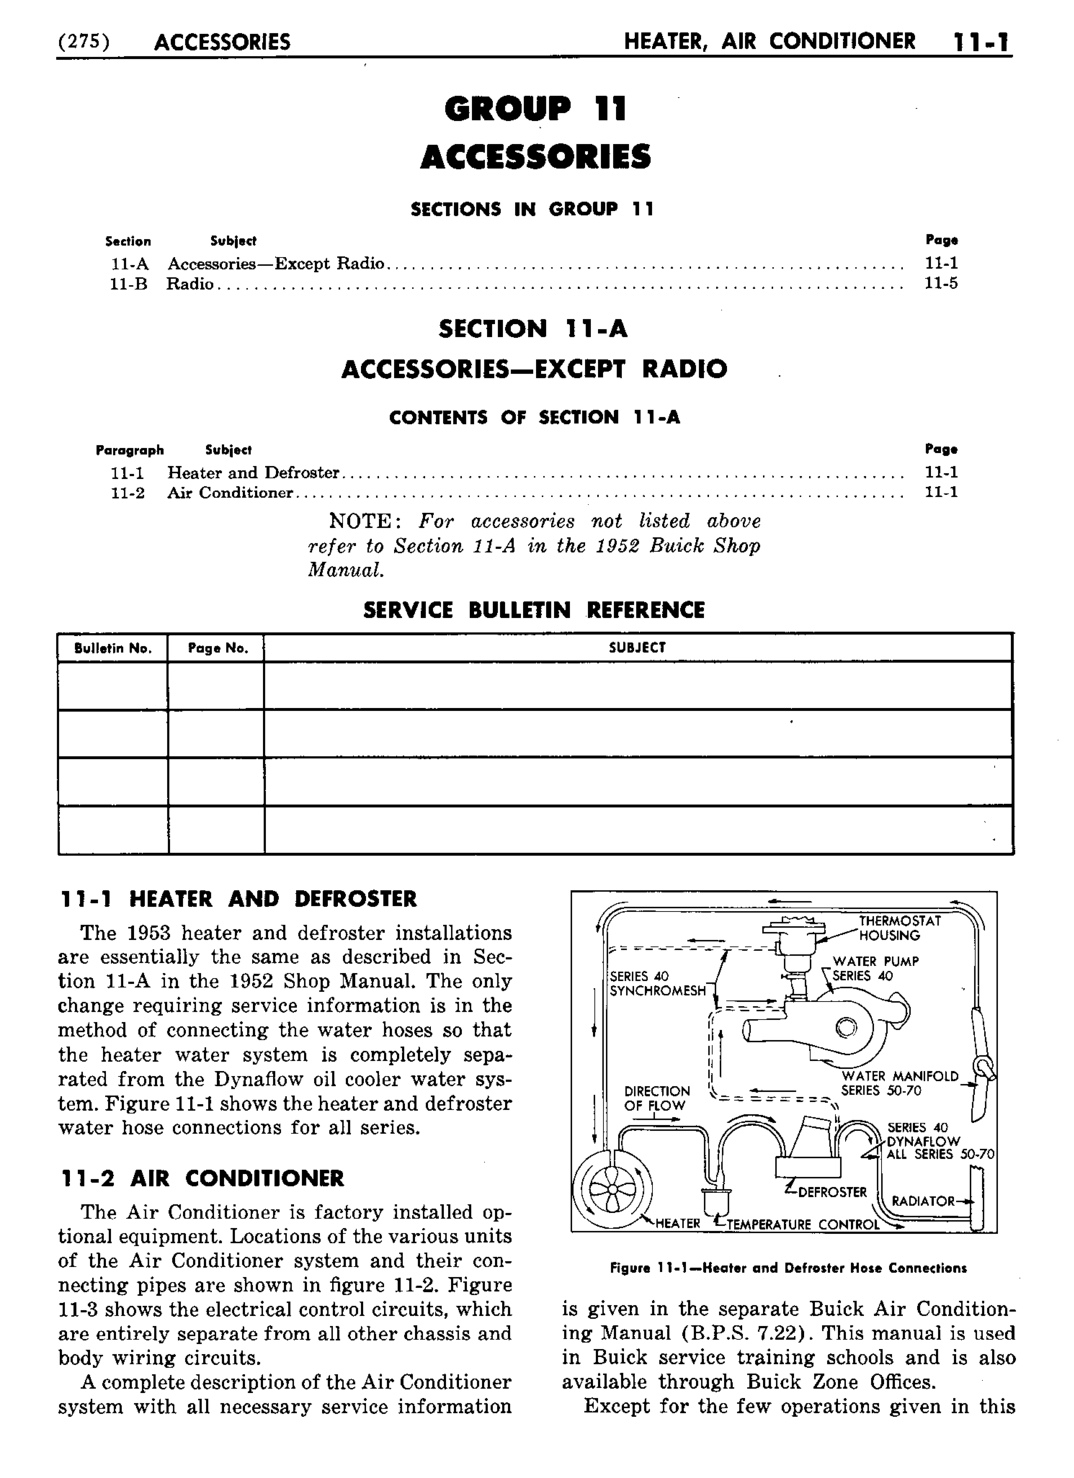 n_12 1953 Buick Shop Manual - Accessories-001-001.jpg